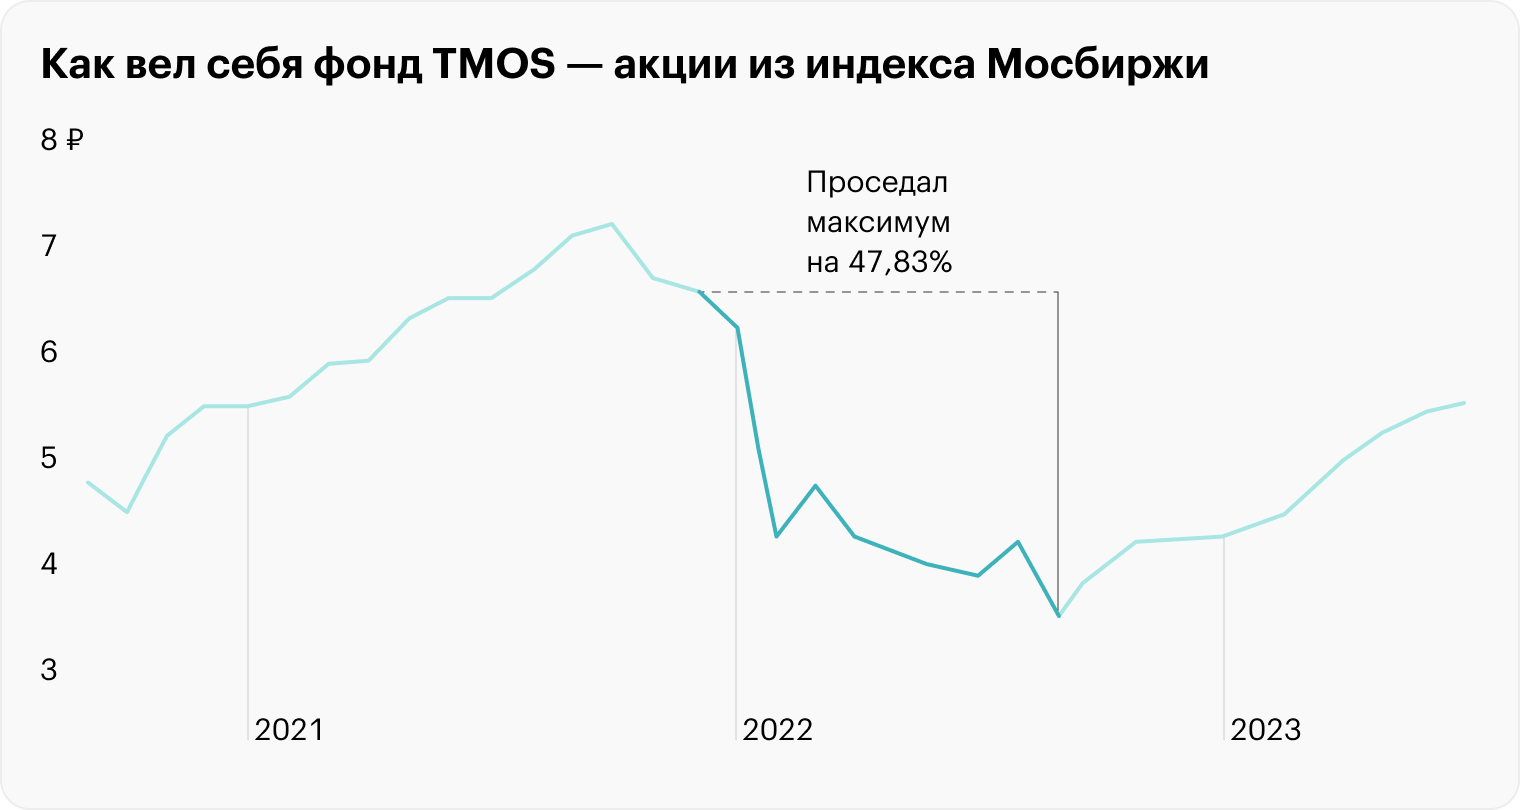 В то же время фонд на индекс Мосбиржи в 2022 году потерял почти 50% за первые восемь месяцев и закончил год в сильном минусе — падение около 36% за год. Источник: Тинькофф Инвестиции